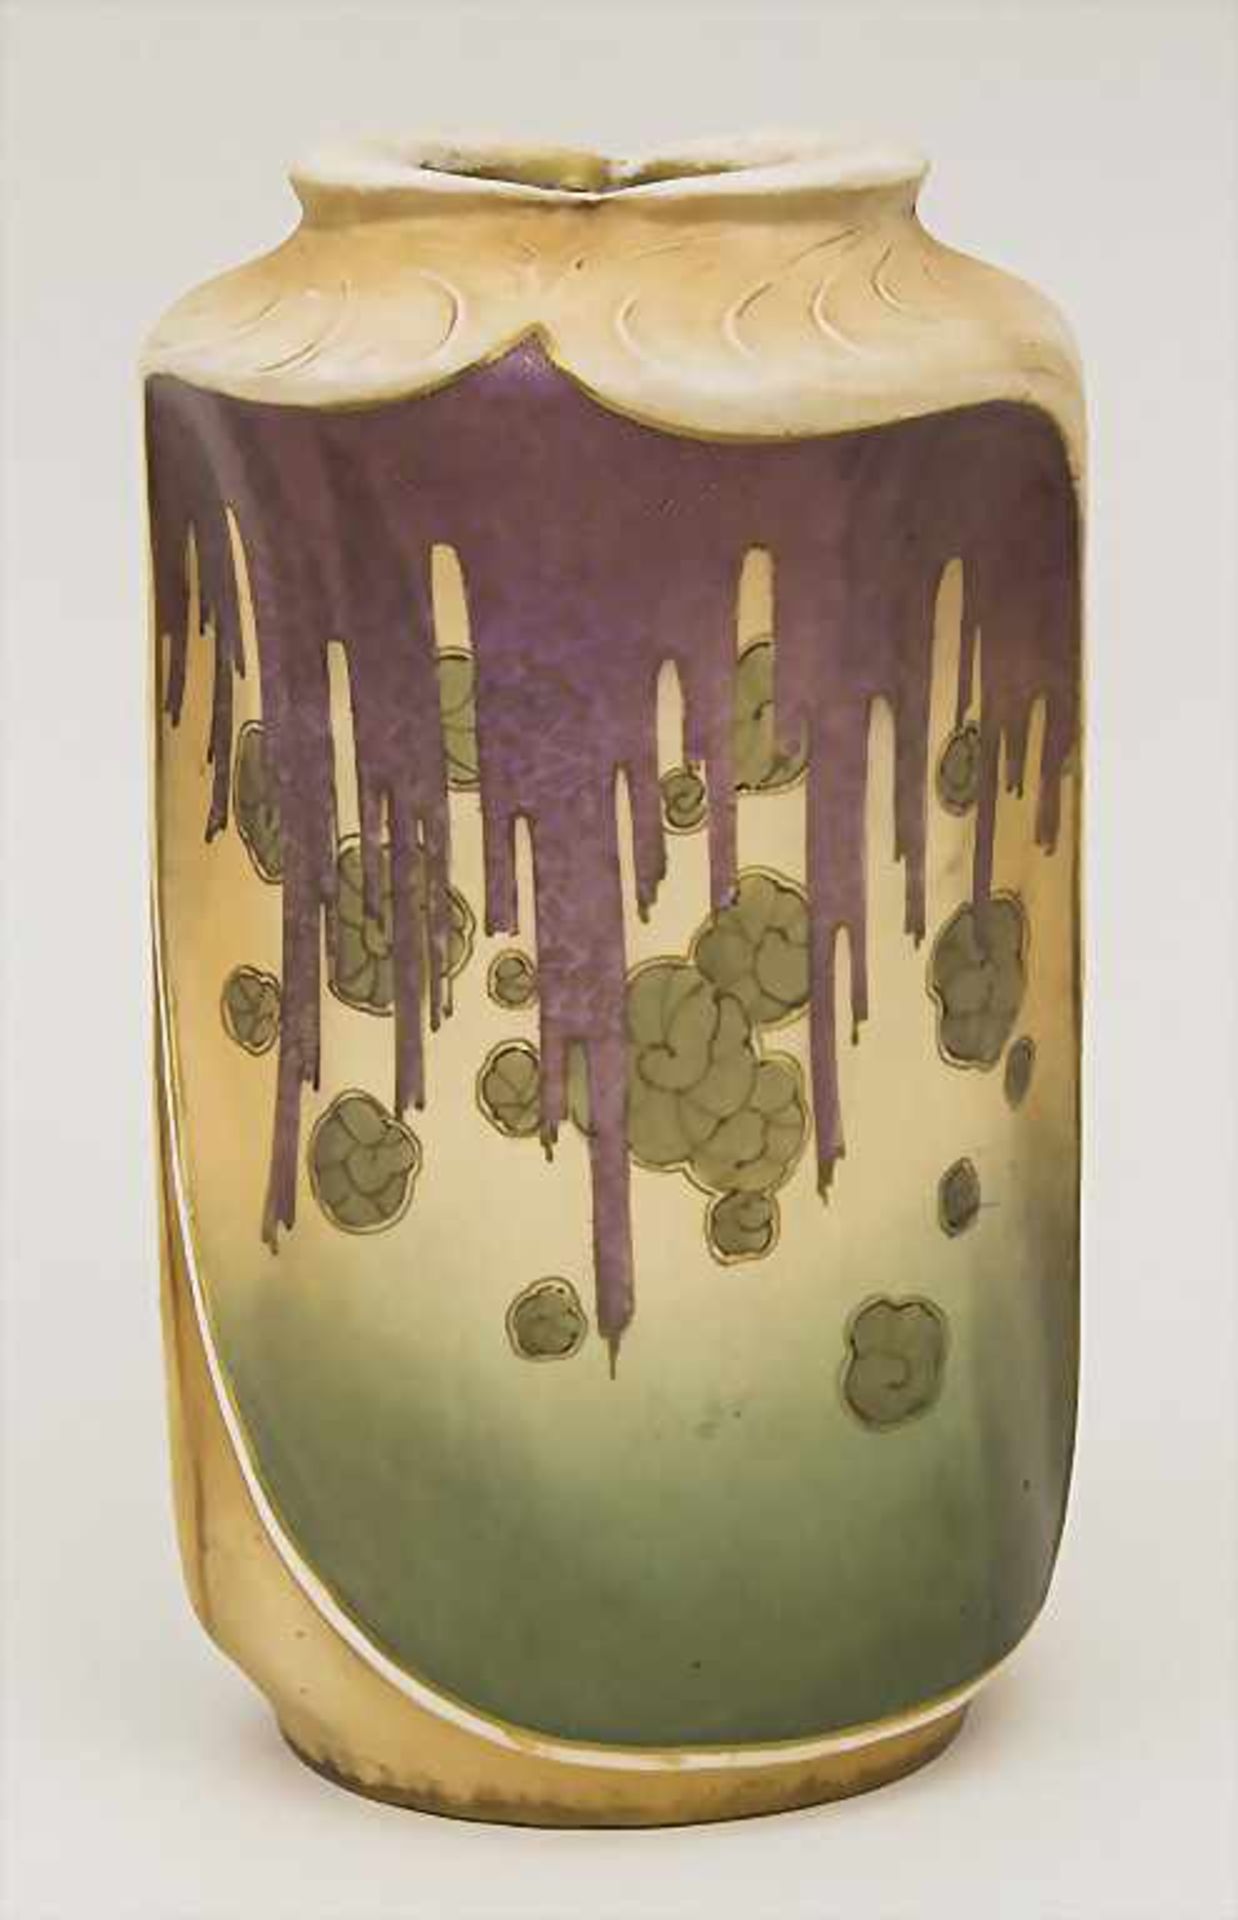 Jugendstil Vase / An Art Nouveau Vase, Amphora-Werk Riessner, Stellmacher & Kessel, Turn bei Teplitz